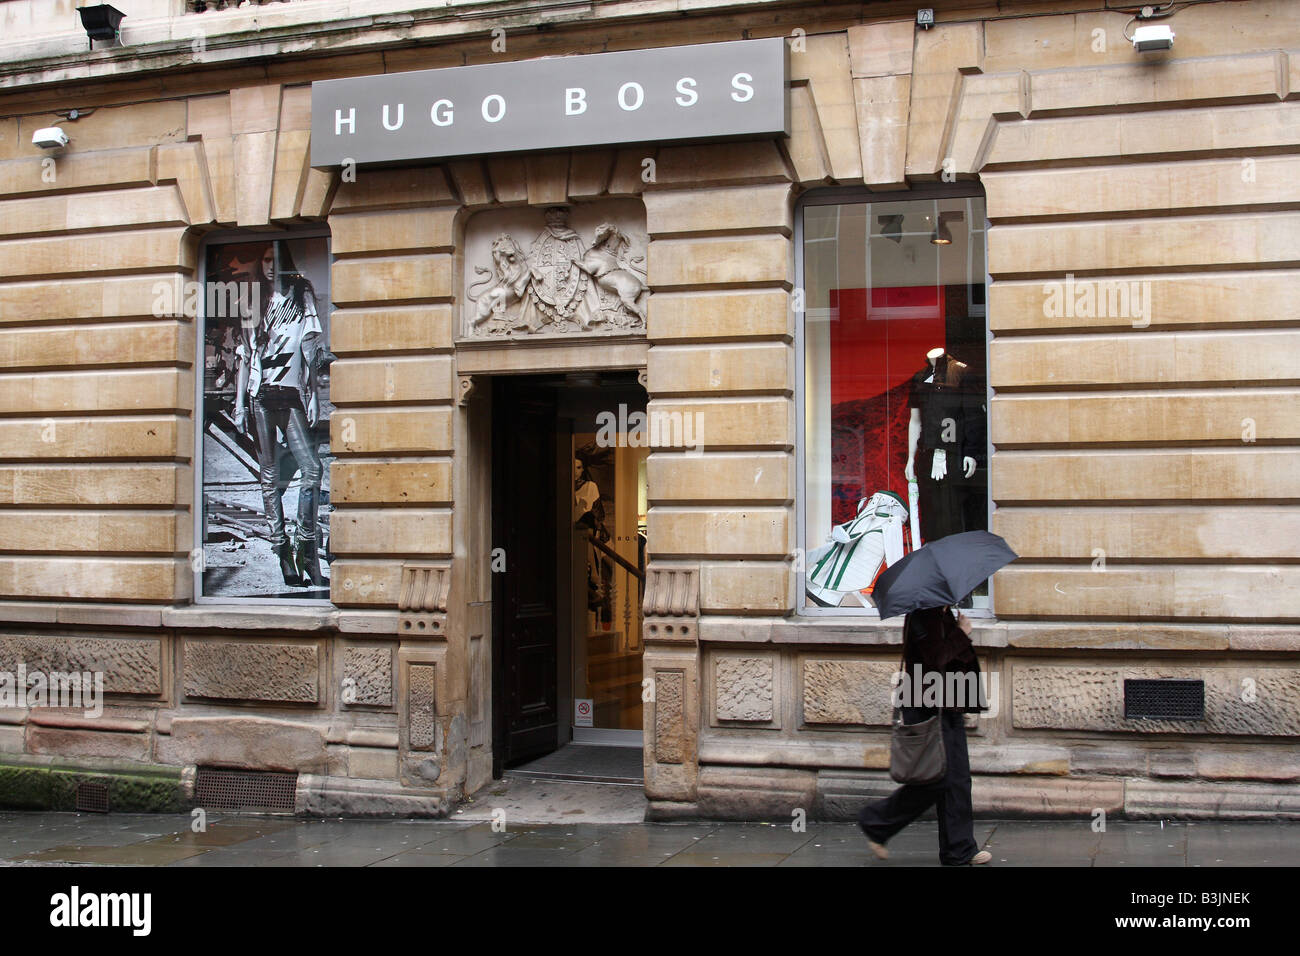 Hugo Boss retail fashion outlet, Nottingham, England, U.K. Stock Photo